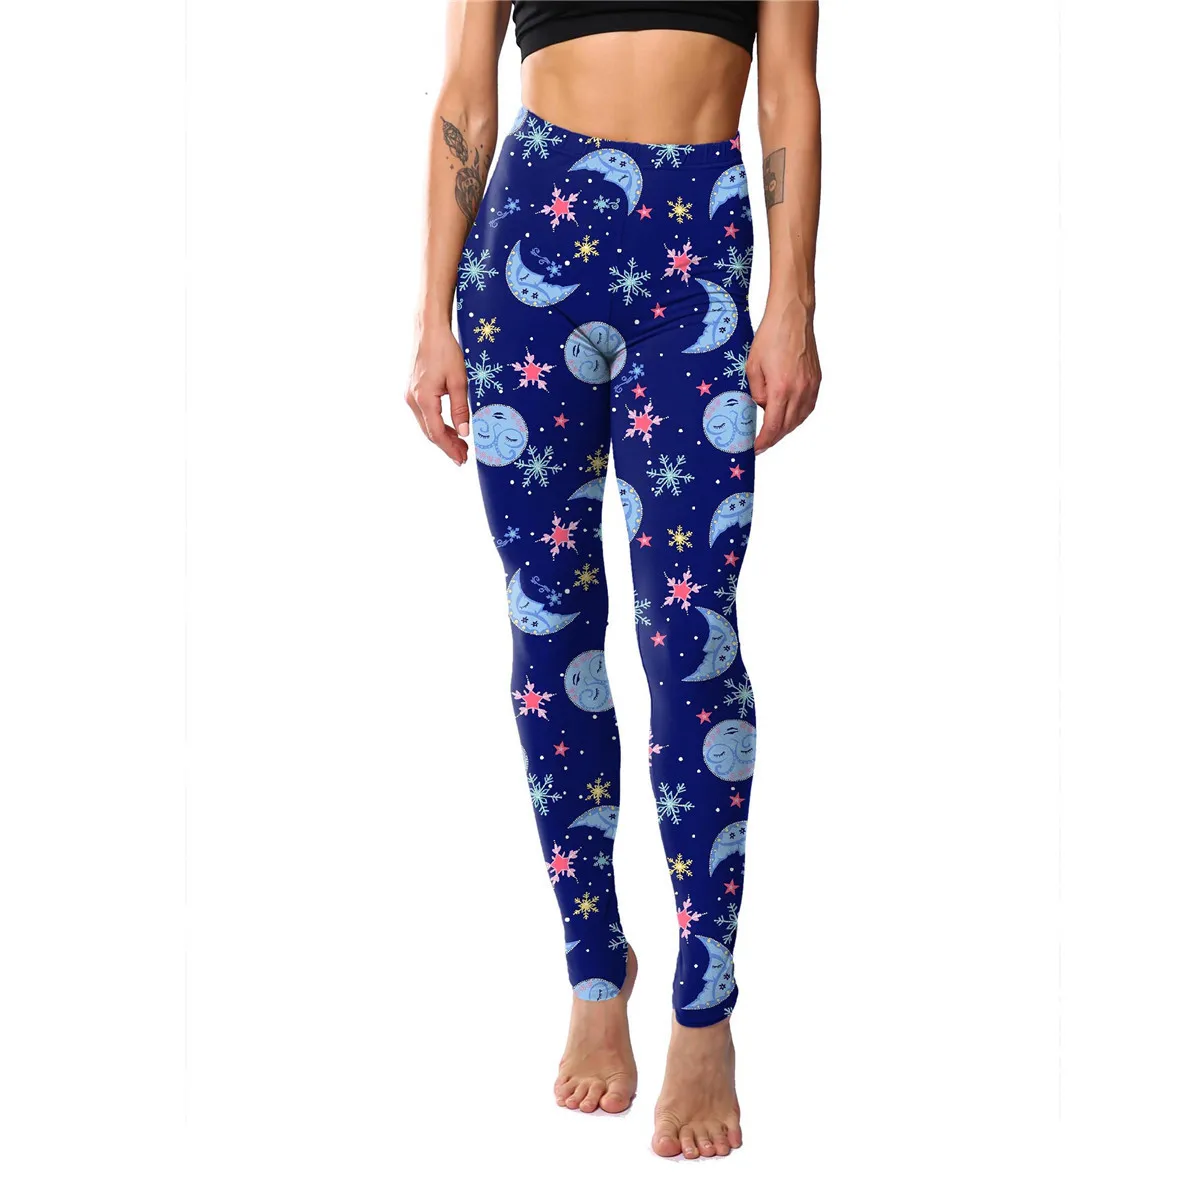 

Женские леггинсы, укороченные штаны с принтом Солнца и Луны, облегающие штаны для йоги, женские колготки, лосины для занятий йогой